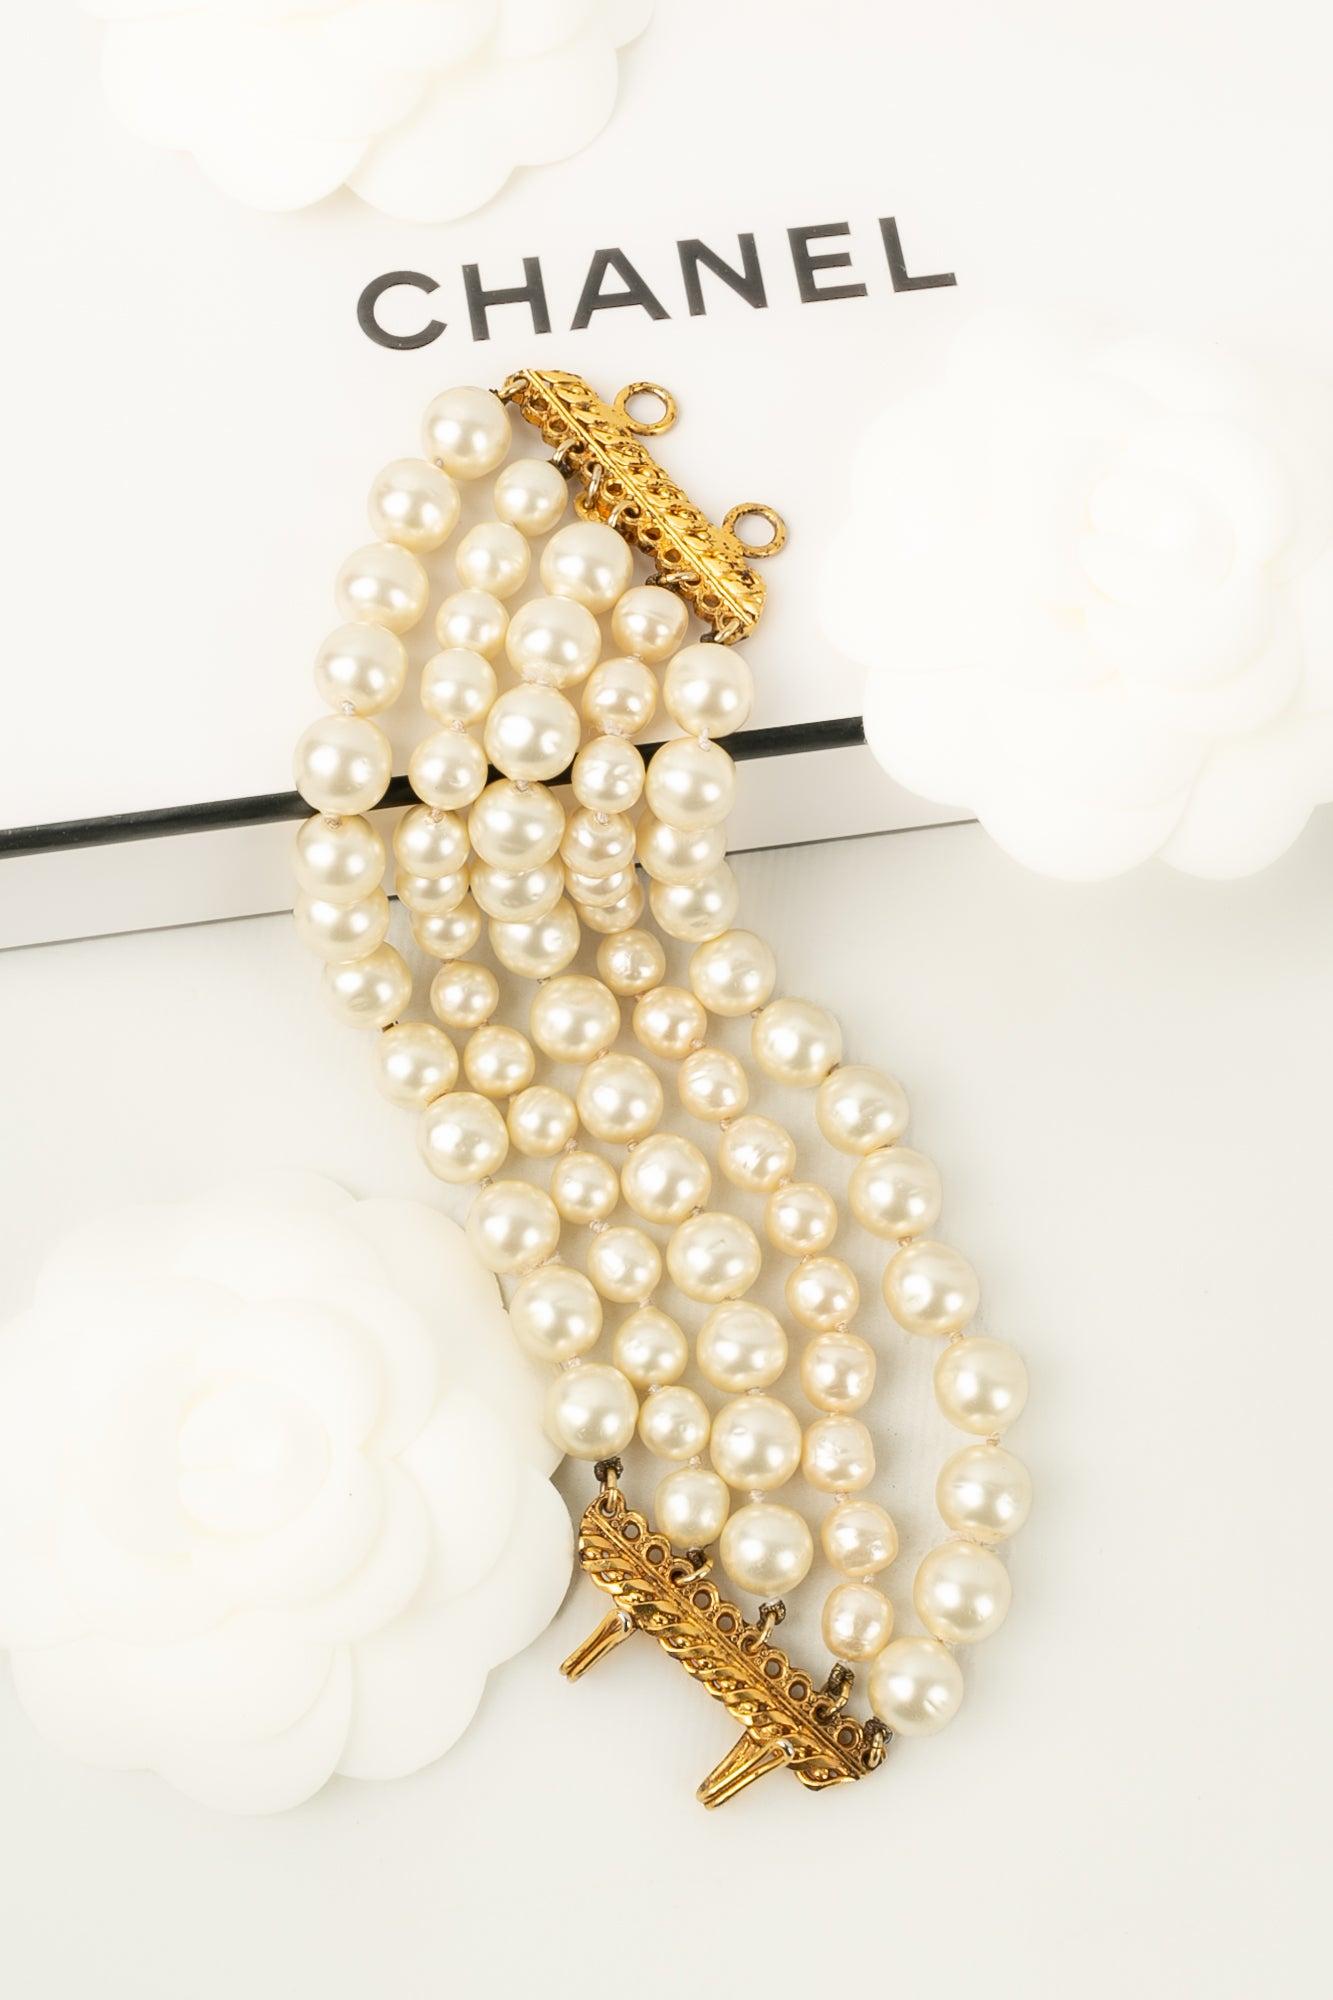 Chanel (Made in France) Armband mit Perlen und einem Verschluss aus goldenem Metall. Schmuck aus den 1980er Jahren.

Zusätzliche Informationen:
Zustand: Sehr guter Zustand
Abmessungen: Länge: 17 cm - Breite: 5 cm
Zeitraum: 20. Jahrhundert

Sellers